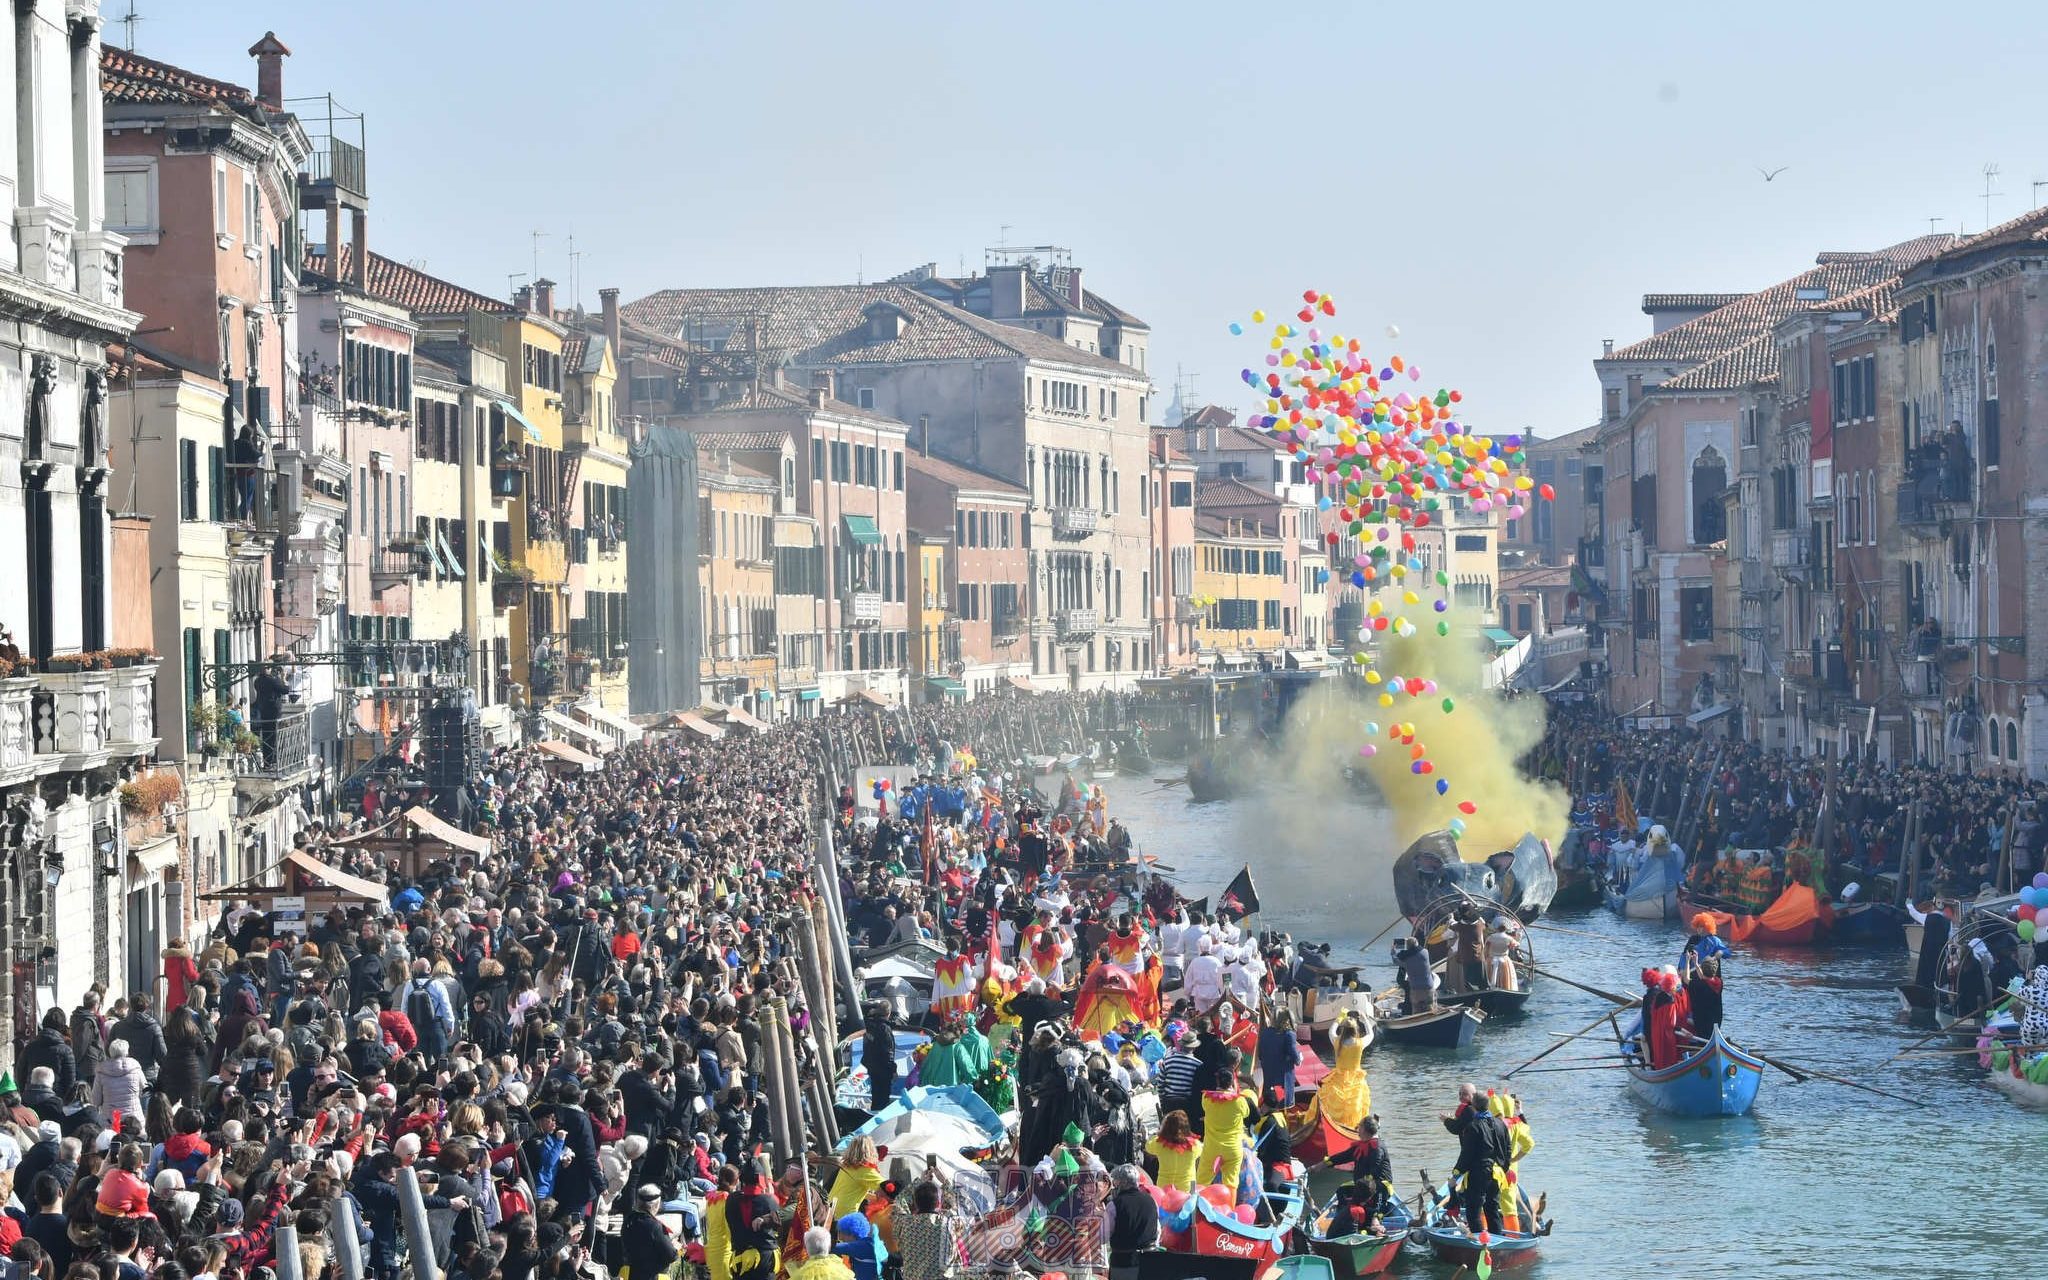 Festa Veneziana on the water – Second Part - Carnevale di Venezia 2020 - sito ufficiale2048 x 1280